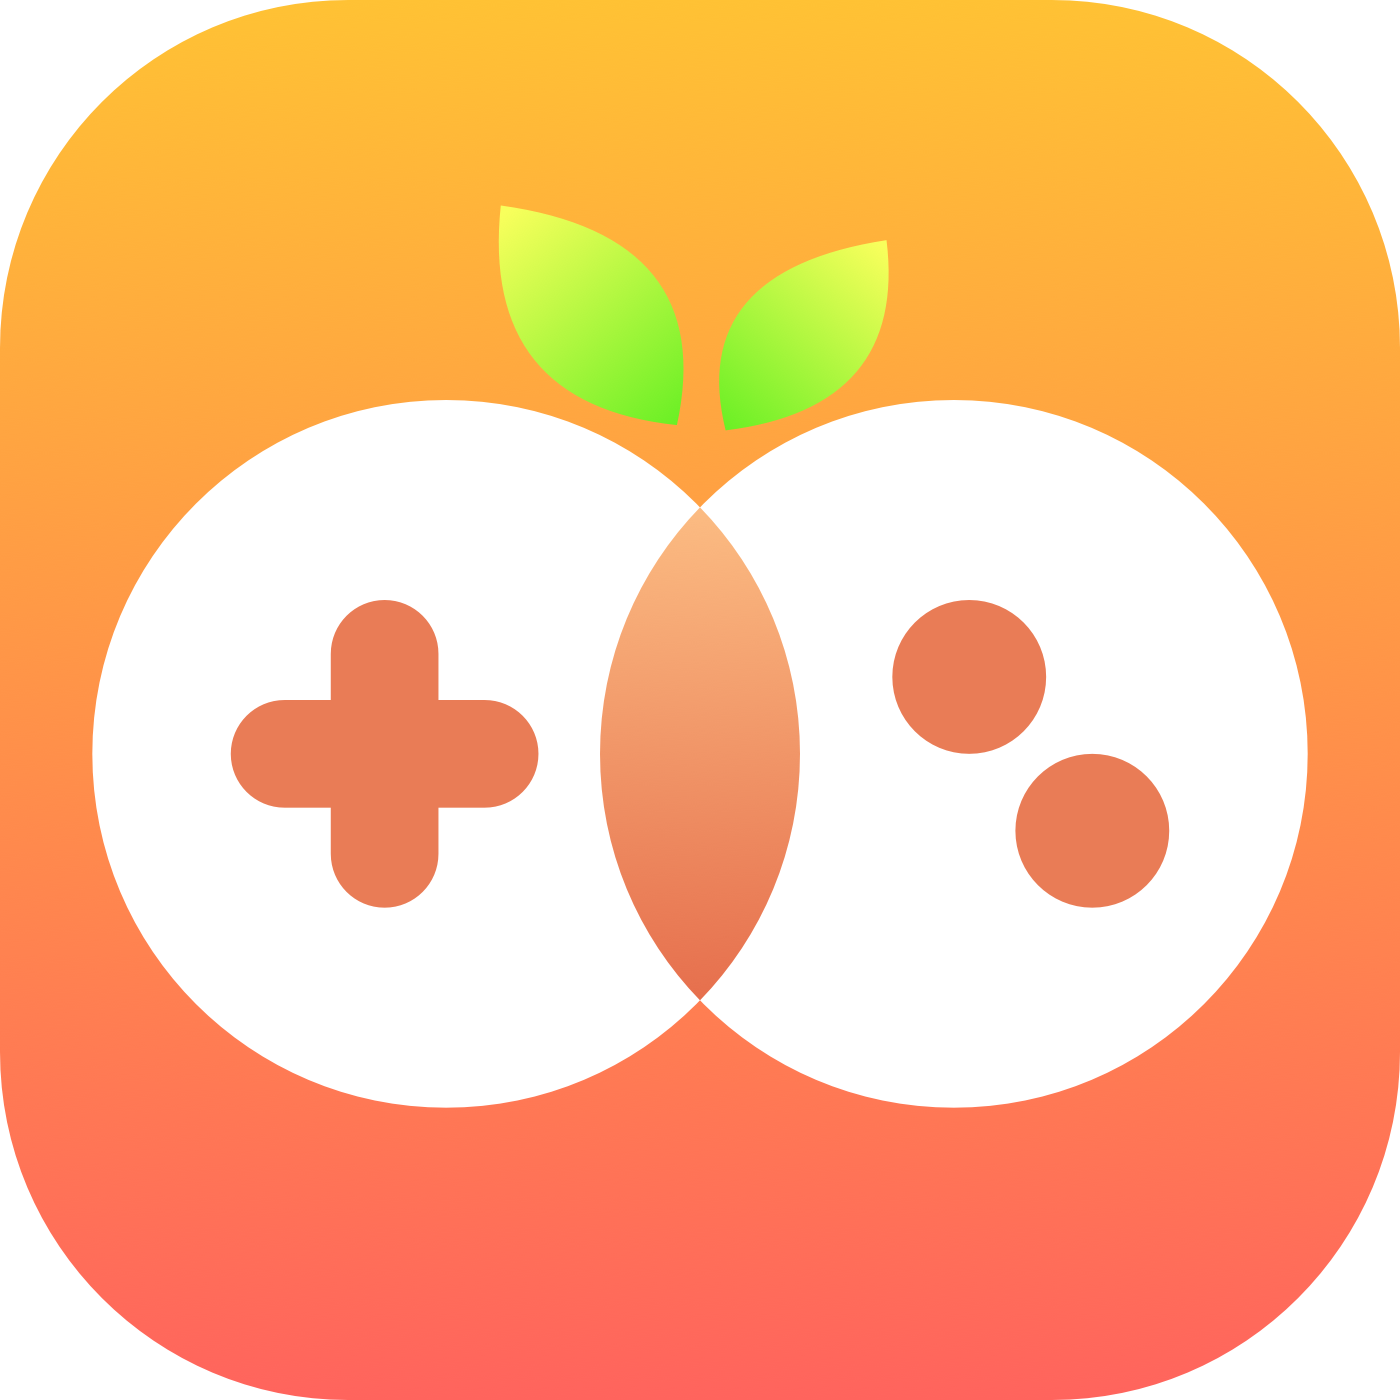 千橙游戏盒appv4.4.4